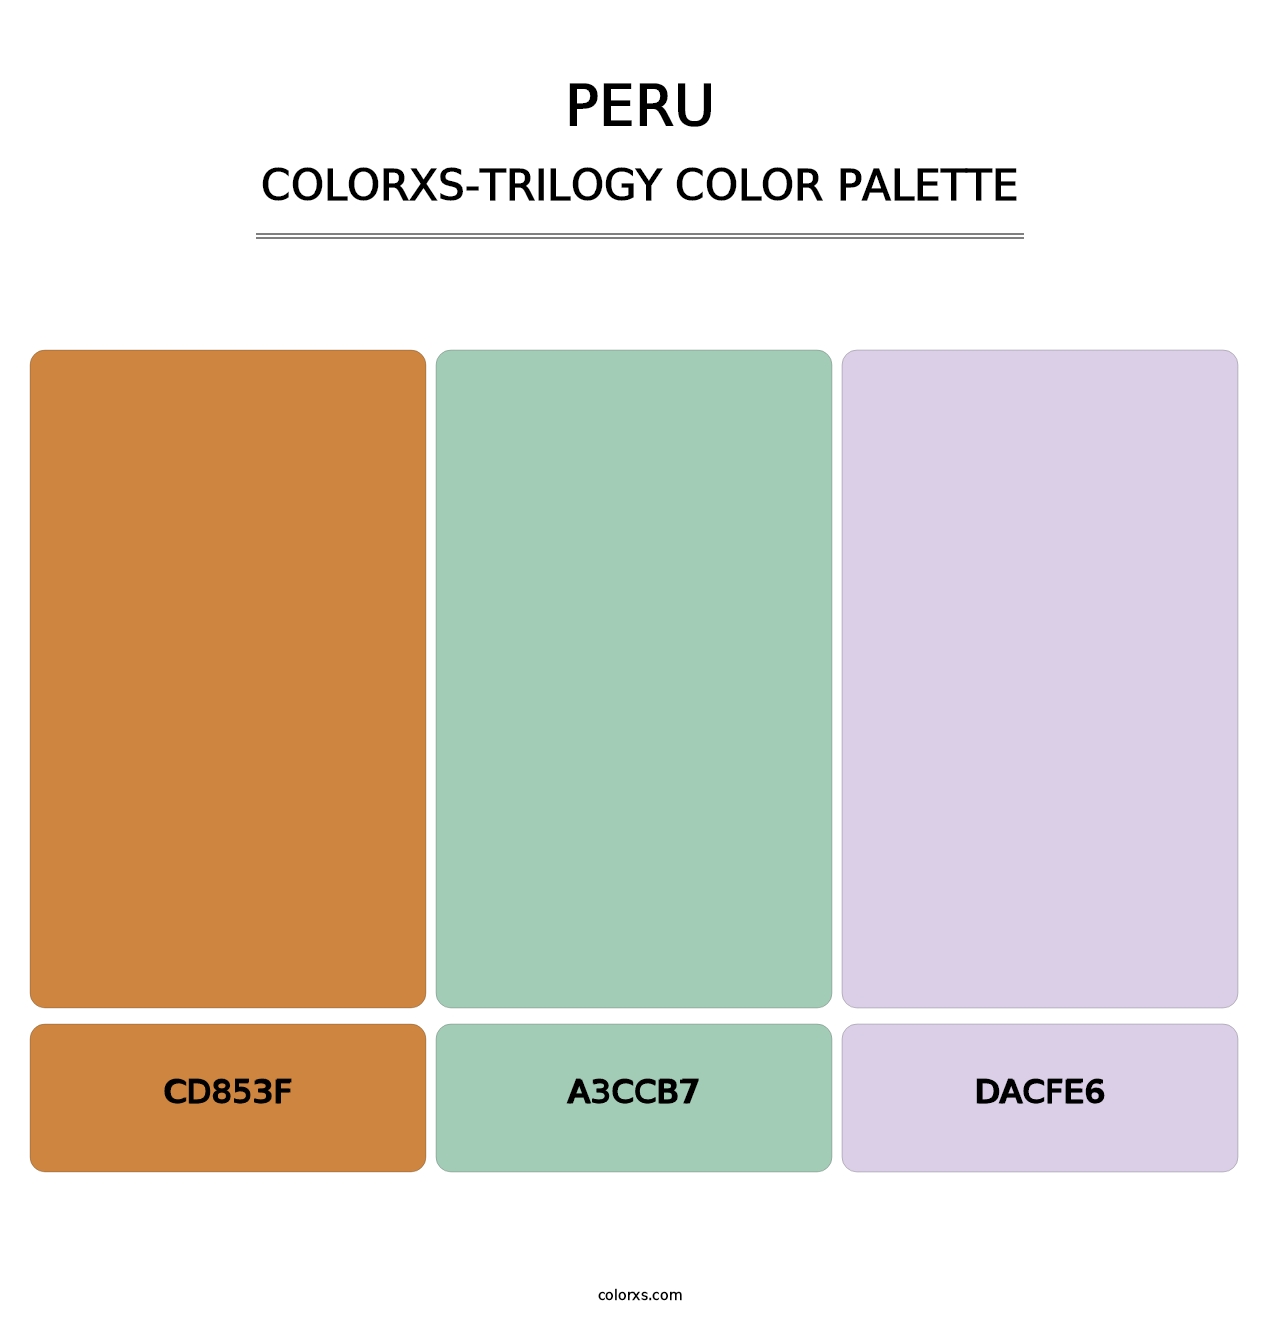 Peru - Colorxs Trilogy Palette